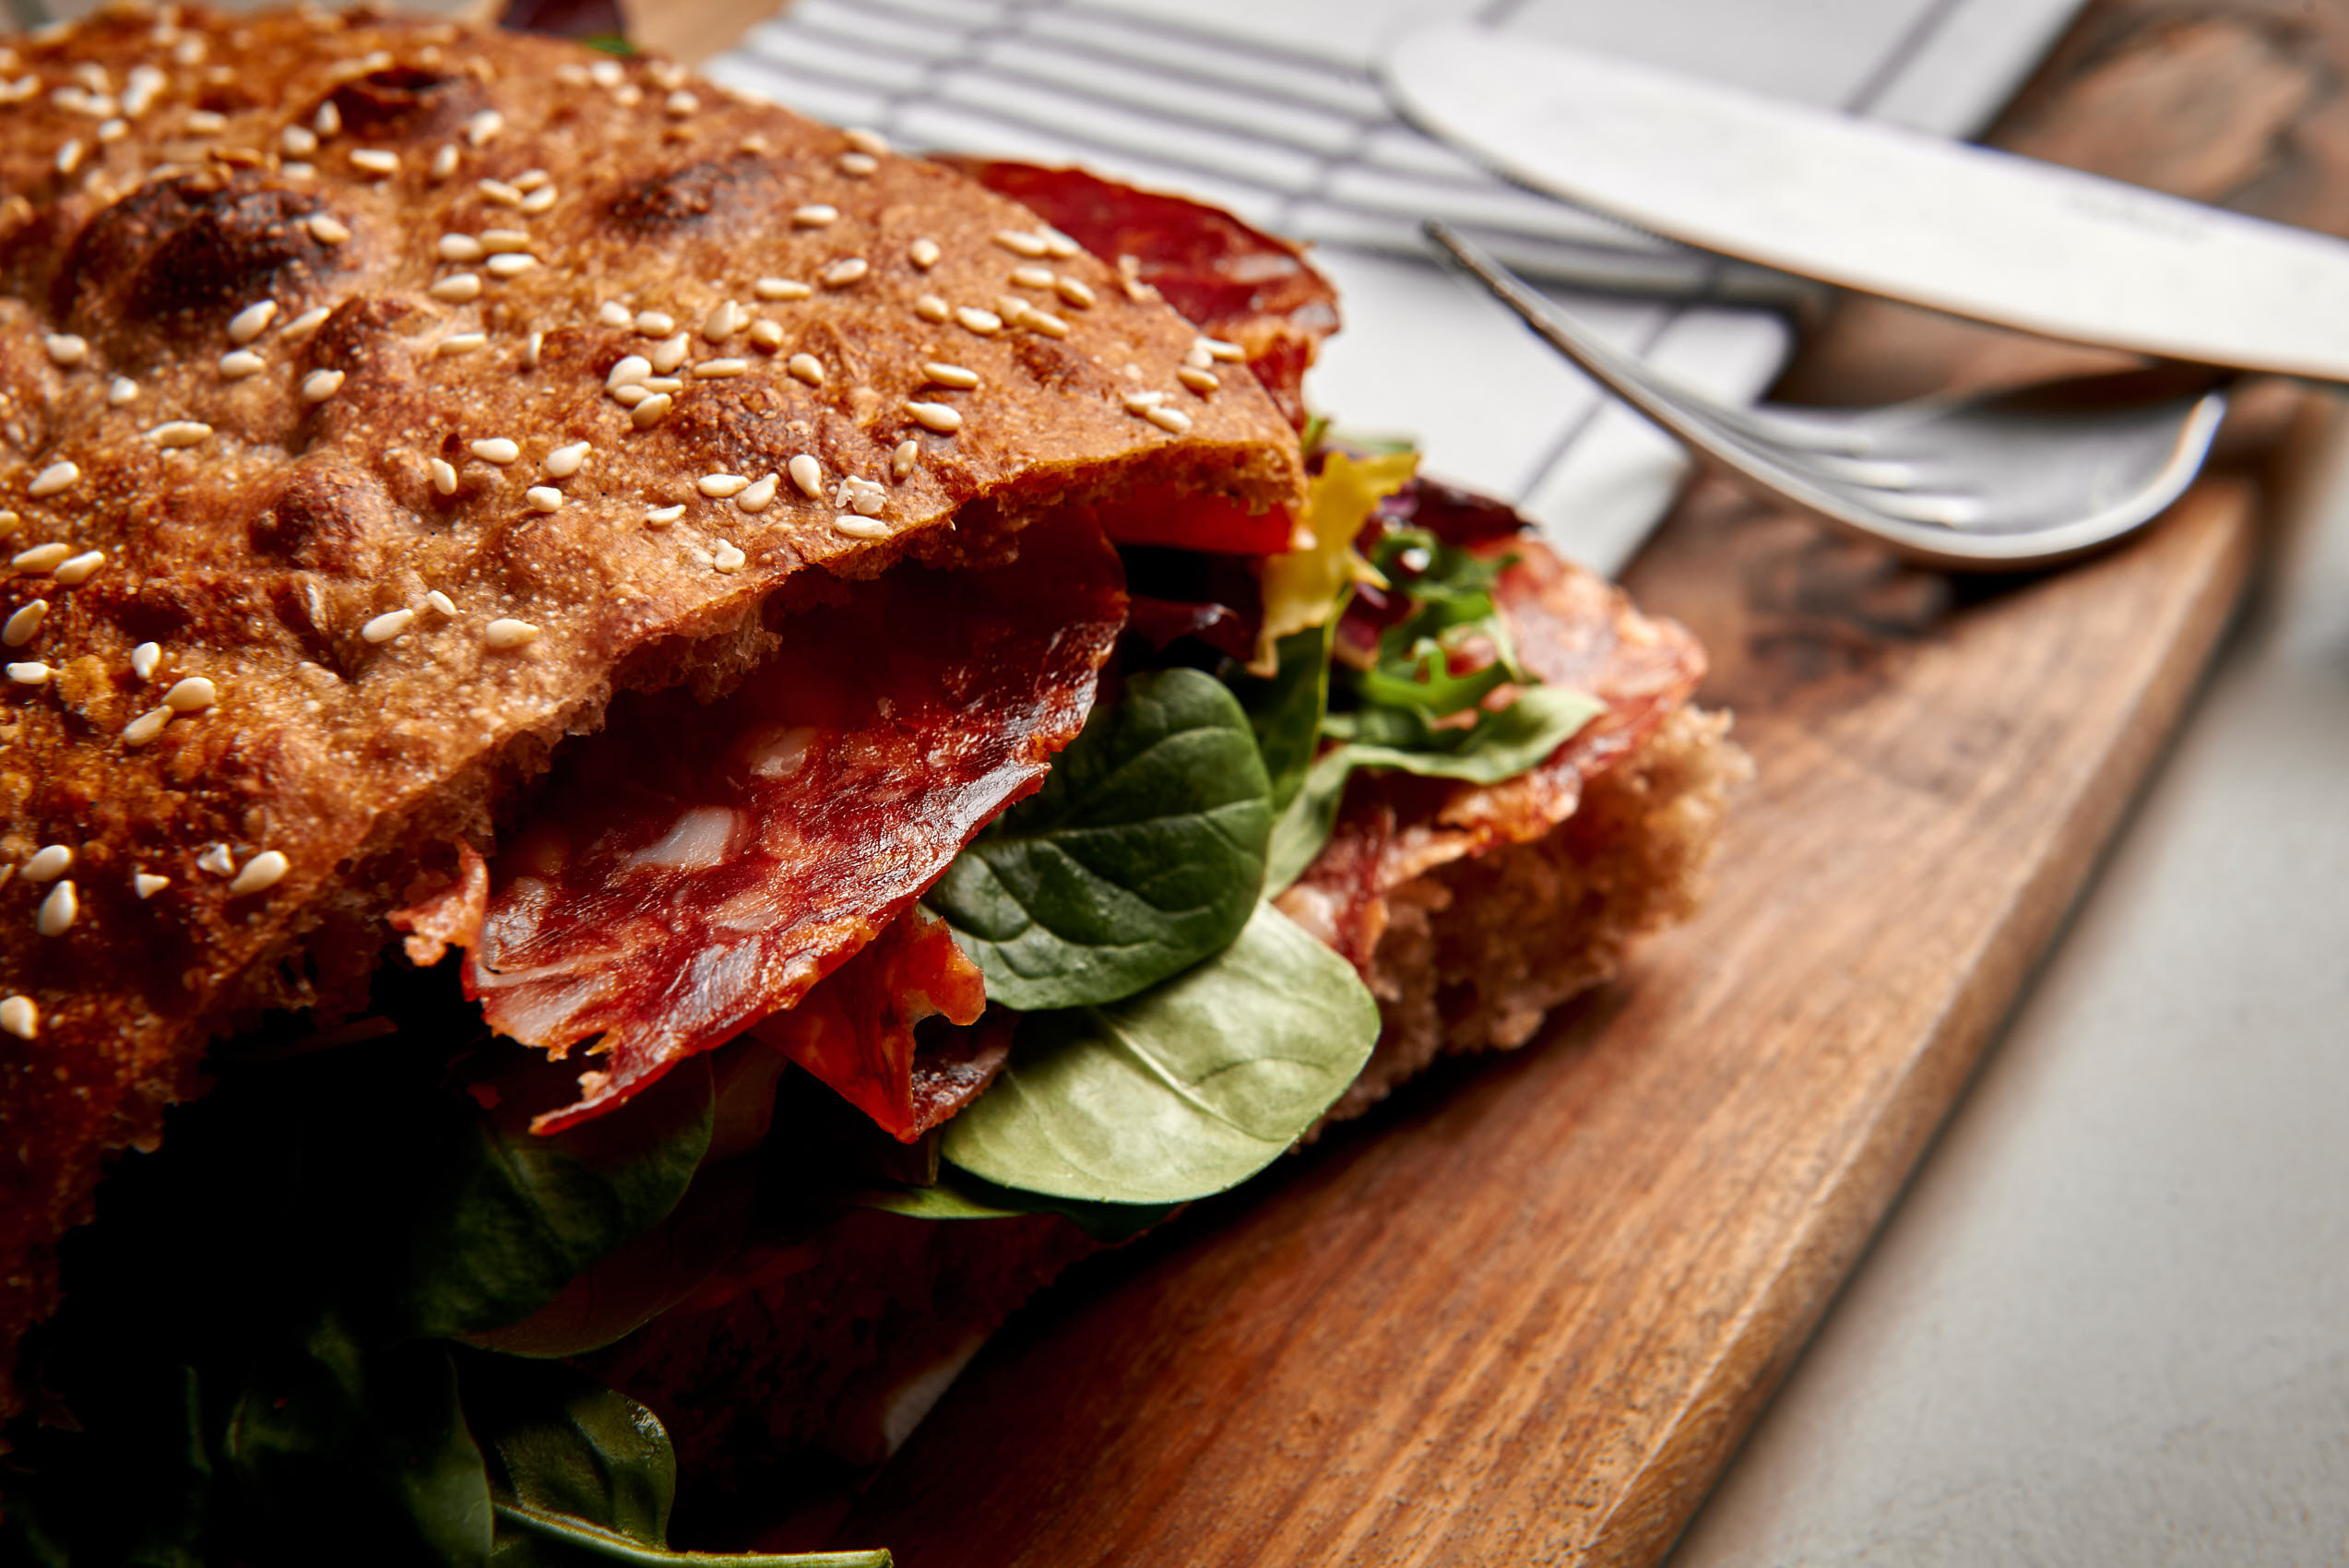 Sandwich closeup photo by Marcel Tiedje